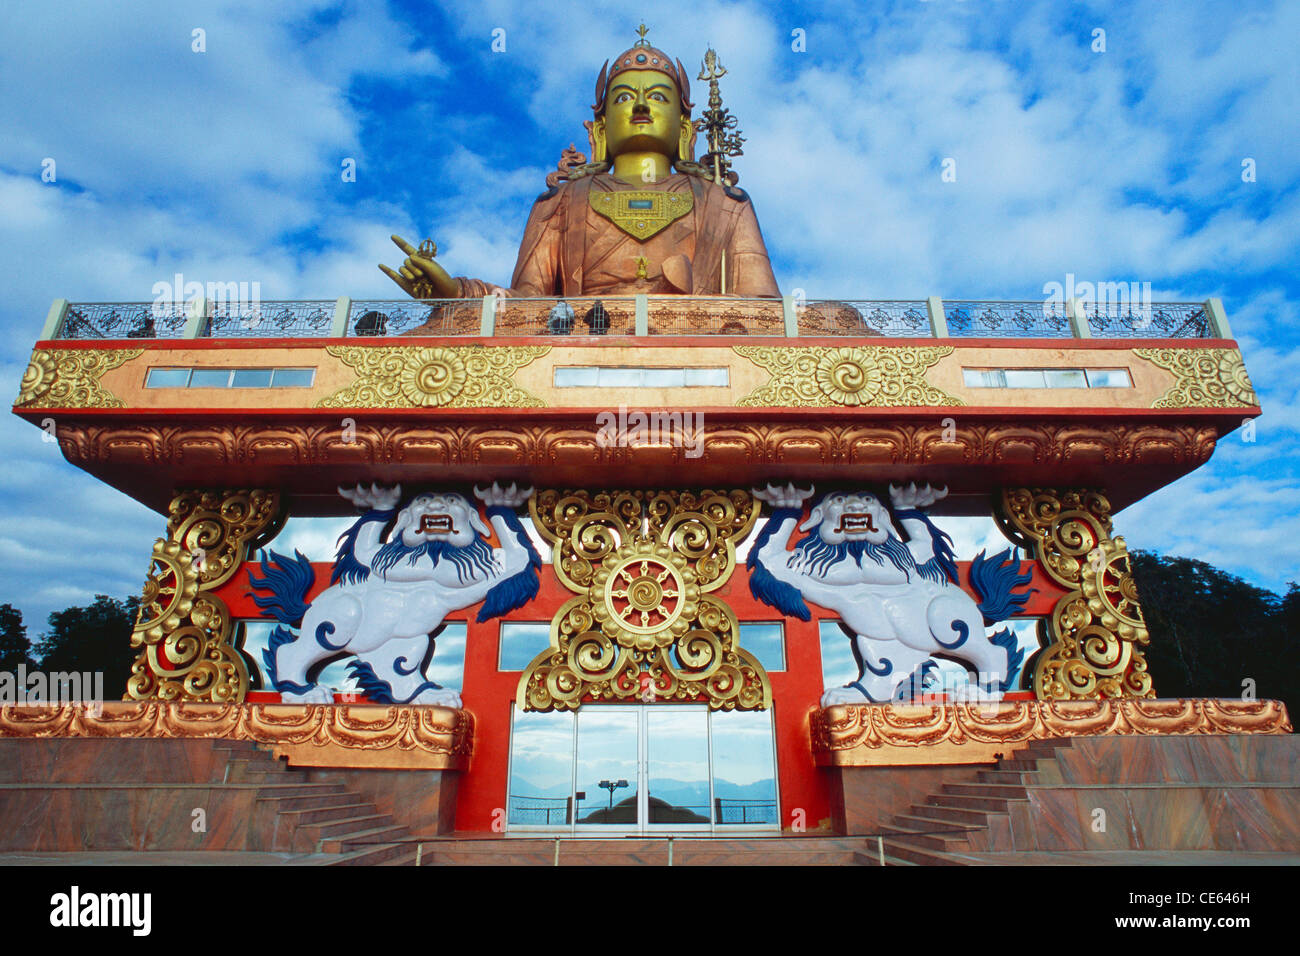 La plus haute statue de Guru Padma Sambhava au monde ; Guru Rinpoché ; Statue de Padmasambhava ; Samdruptse ; Namchi ; Sikkim ; Inde ; asie Banque D'Images